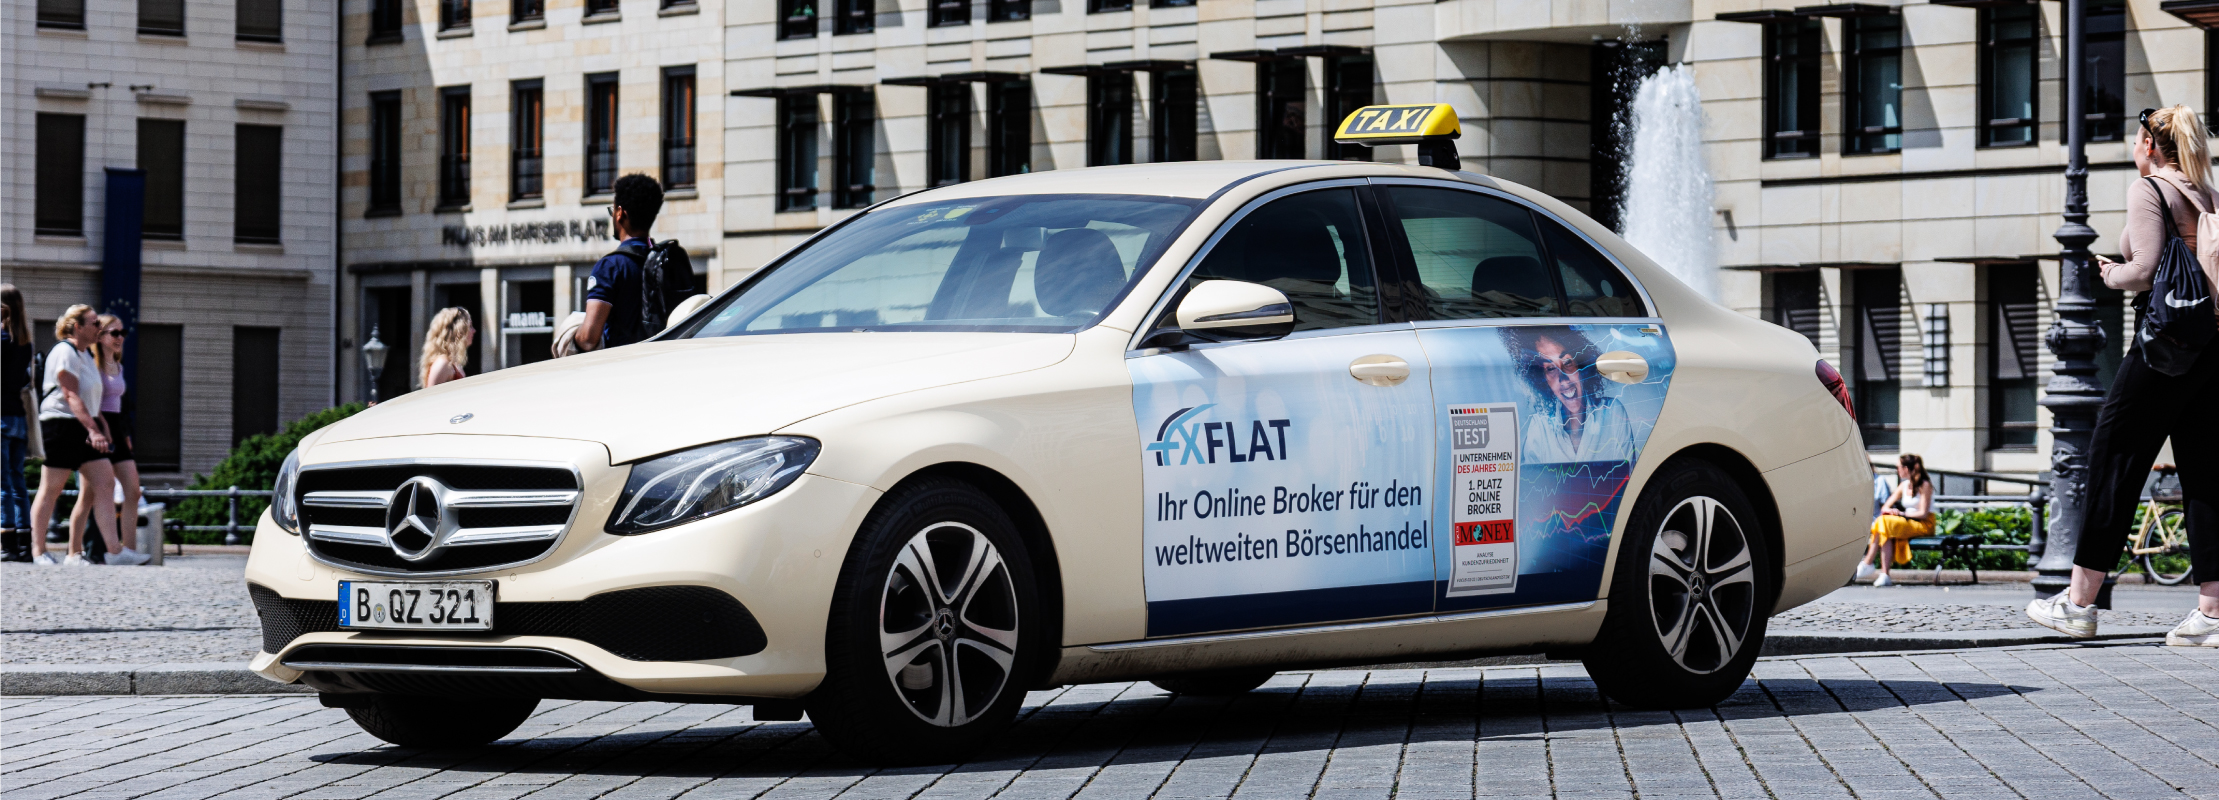 Taxiwerbung Schimanski - hochwertigste Taxiwerbung in ganz Deutschland